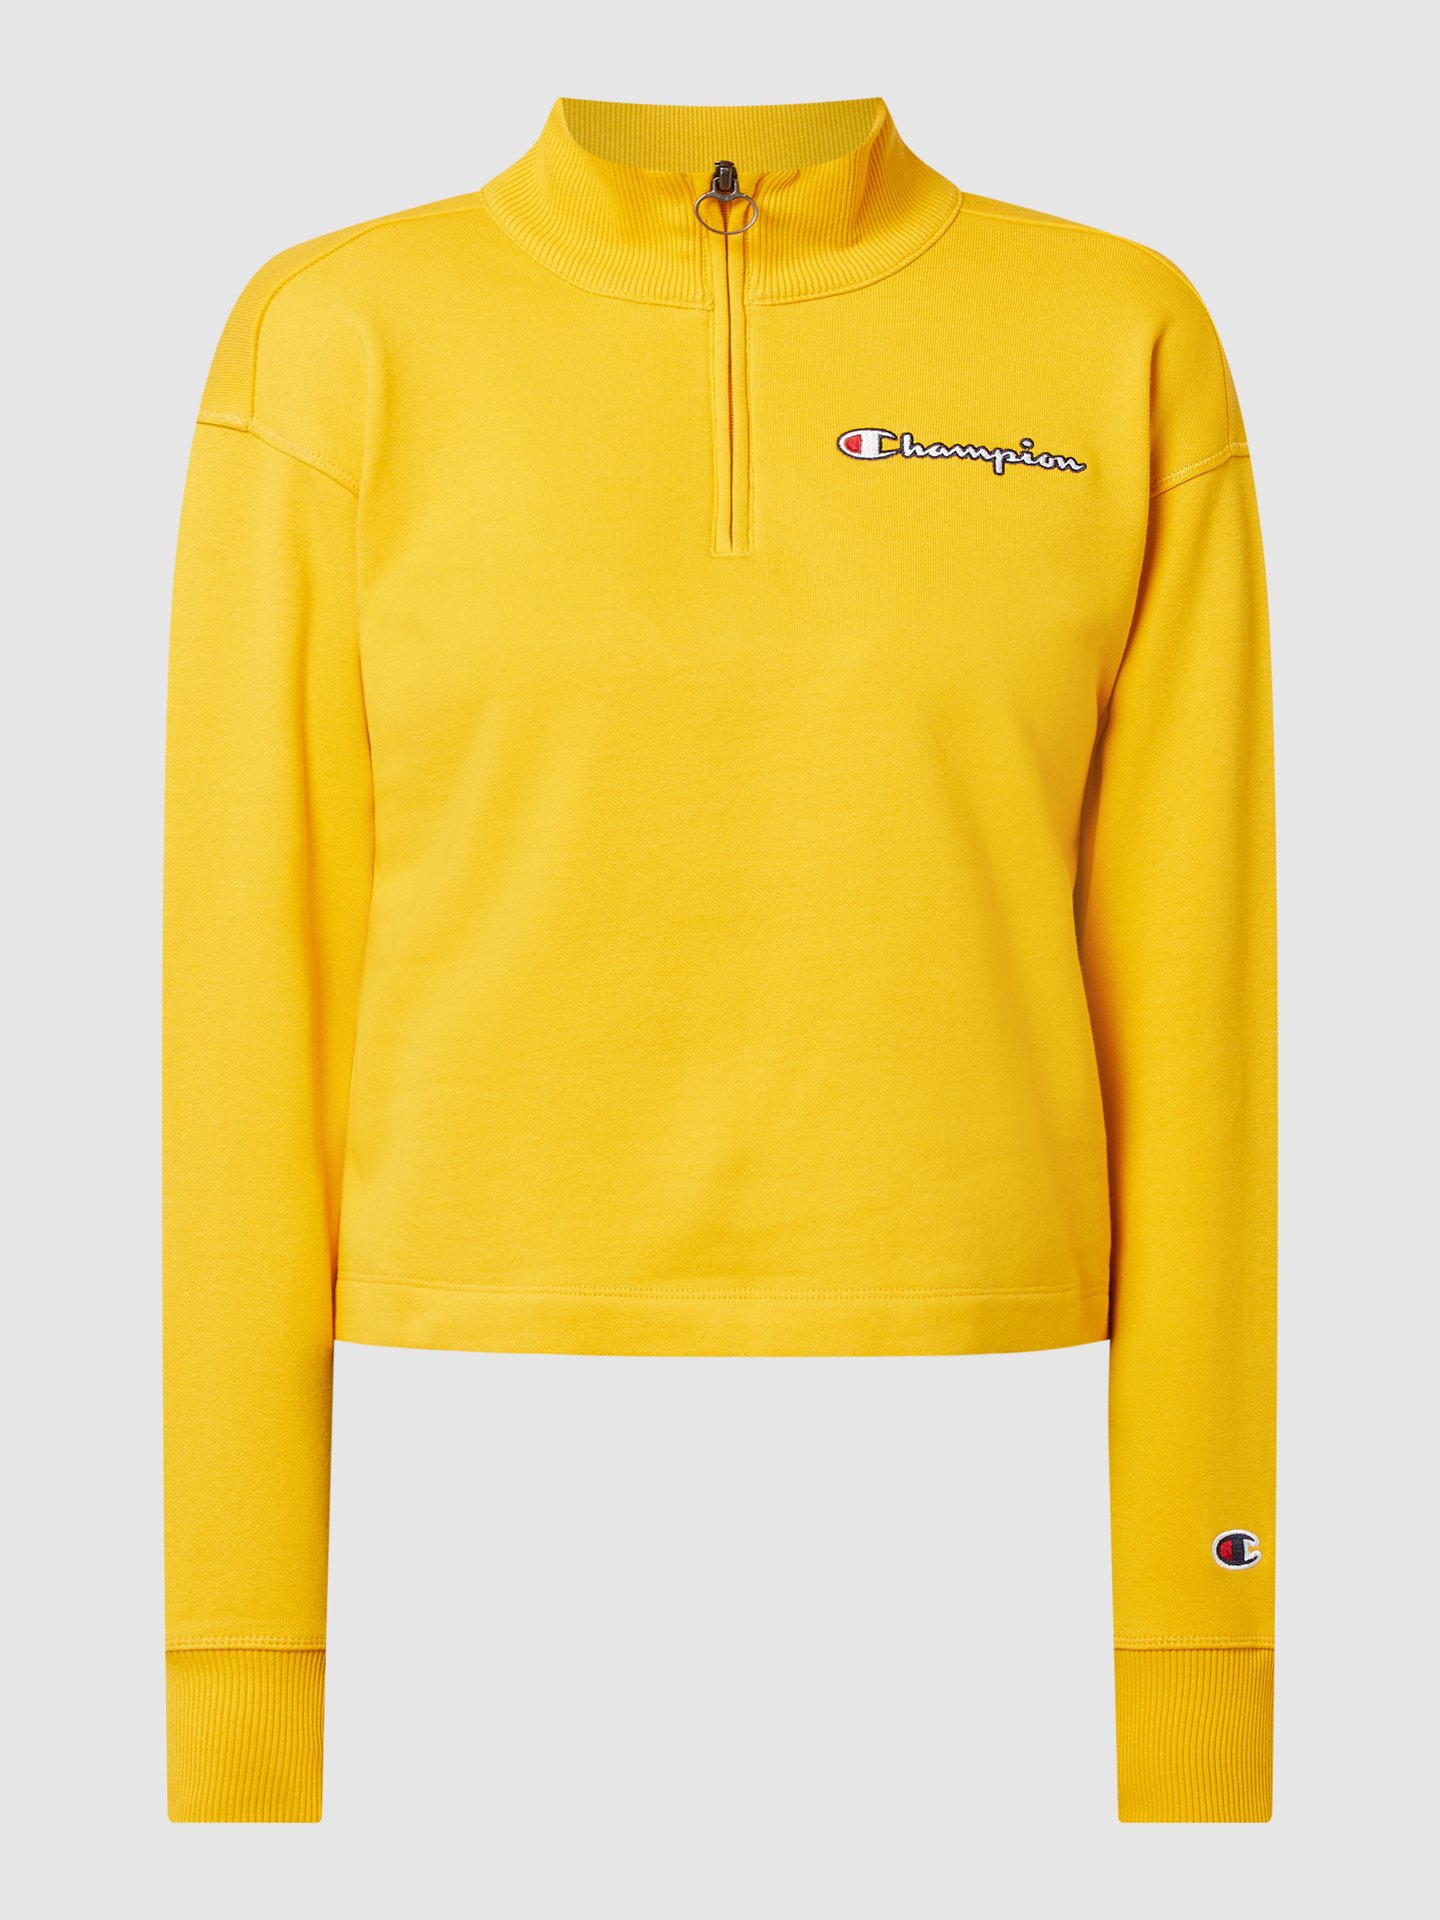 browser Nauwkeurig dichtbij CHAMPION Sweatshirt van katoen in geel online kopen | P&C